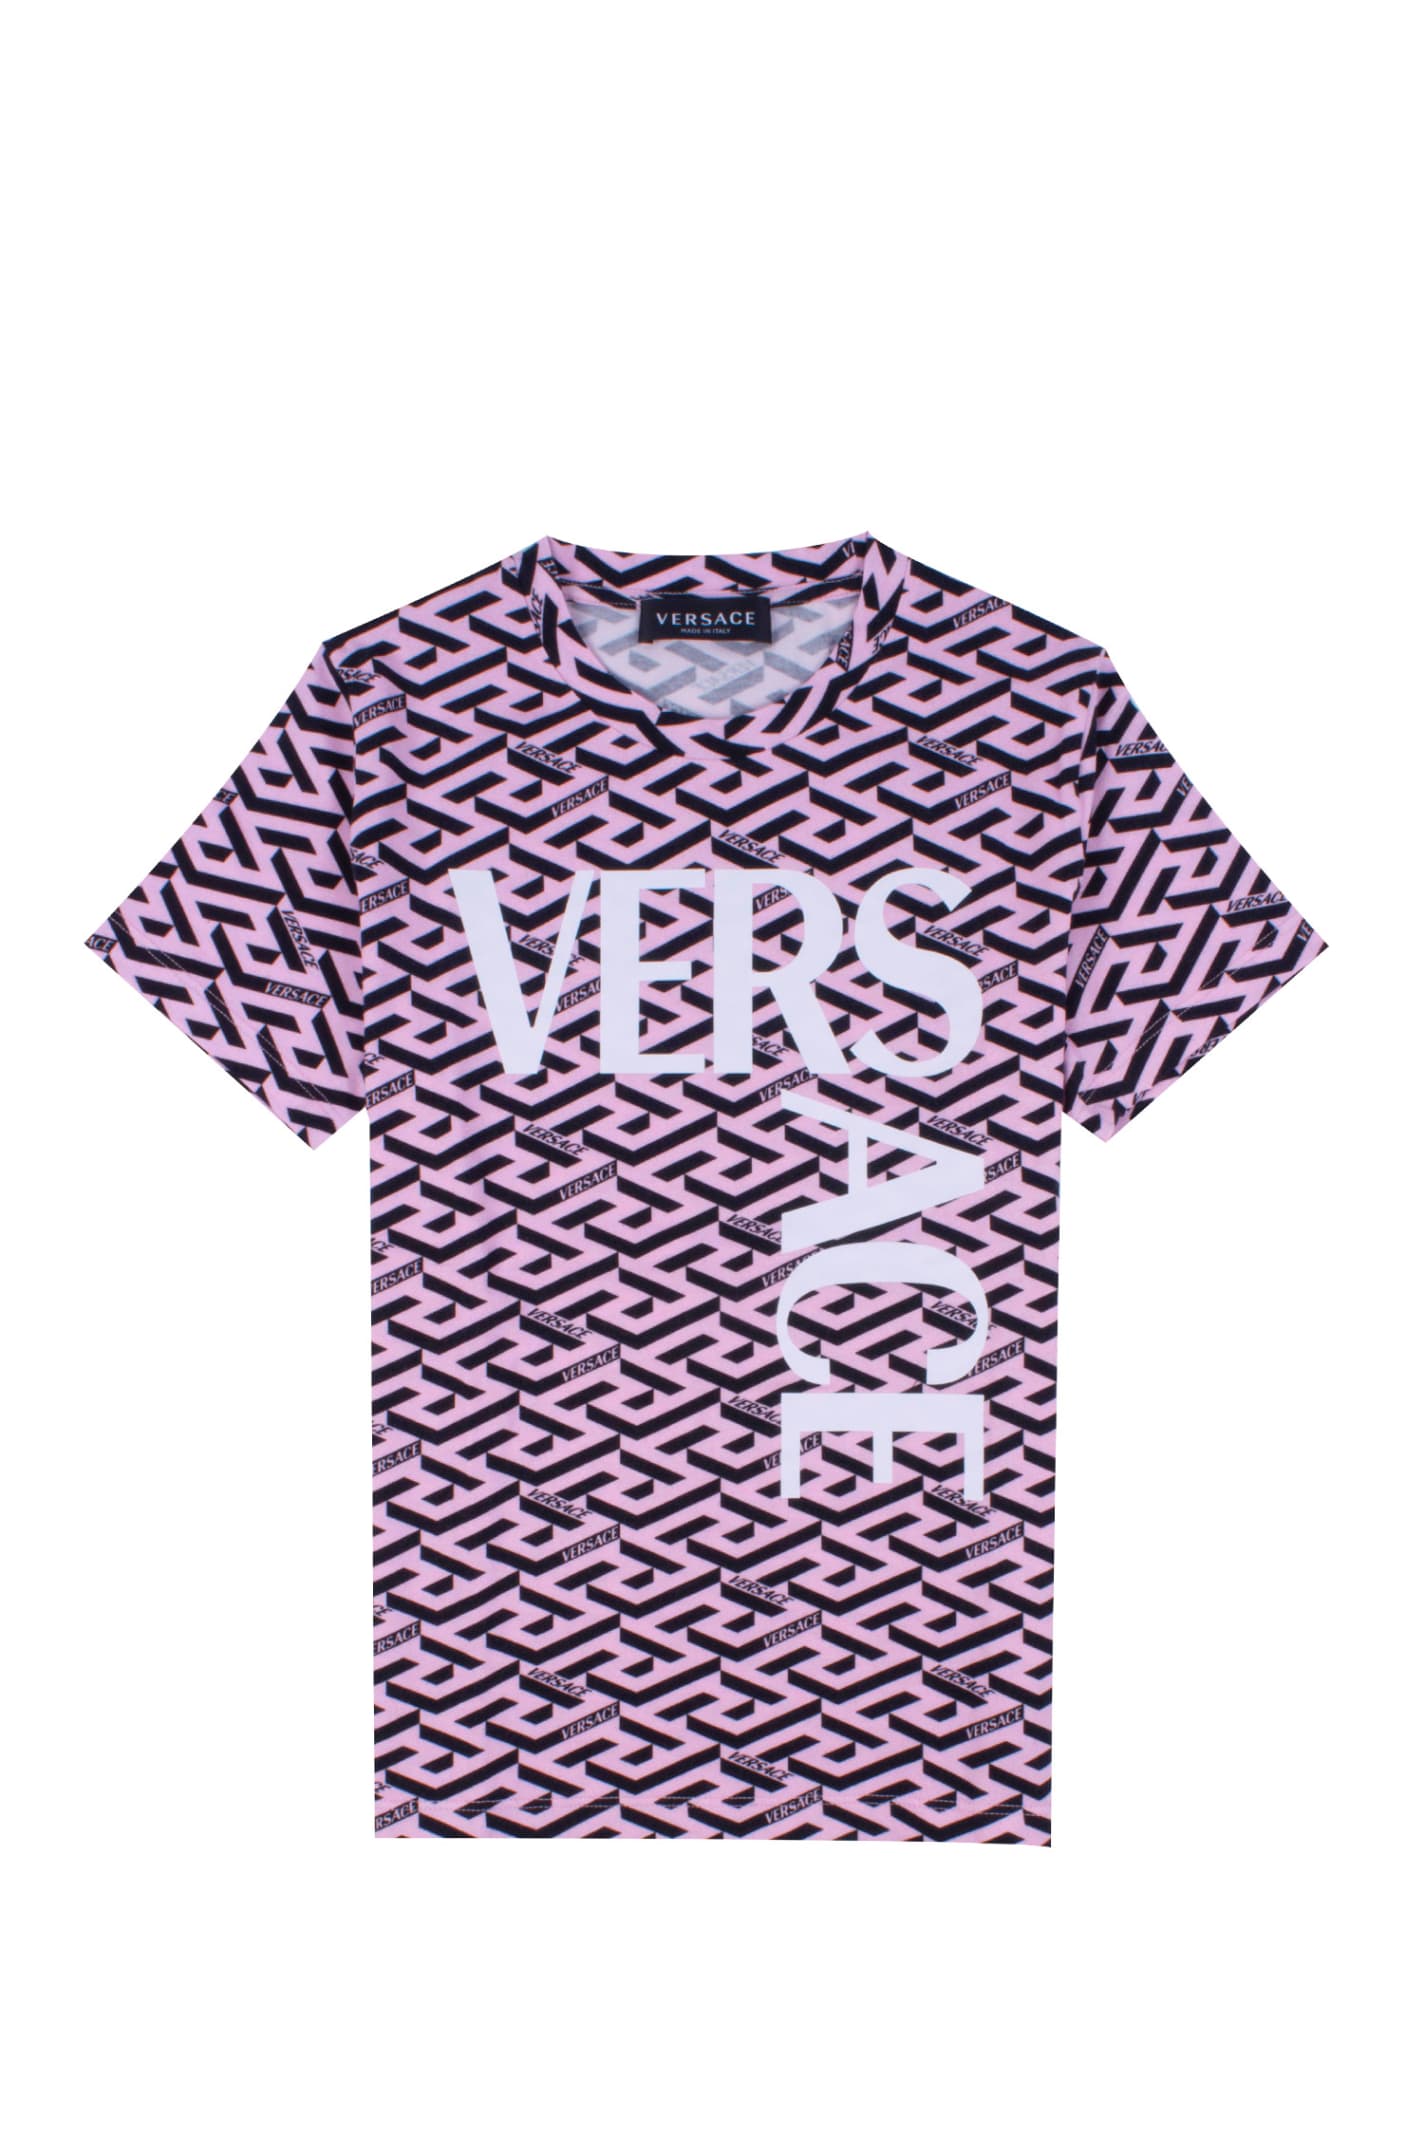 Versace La Greca T-shirt